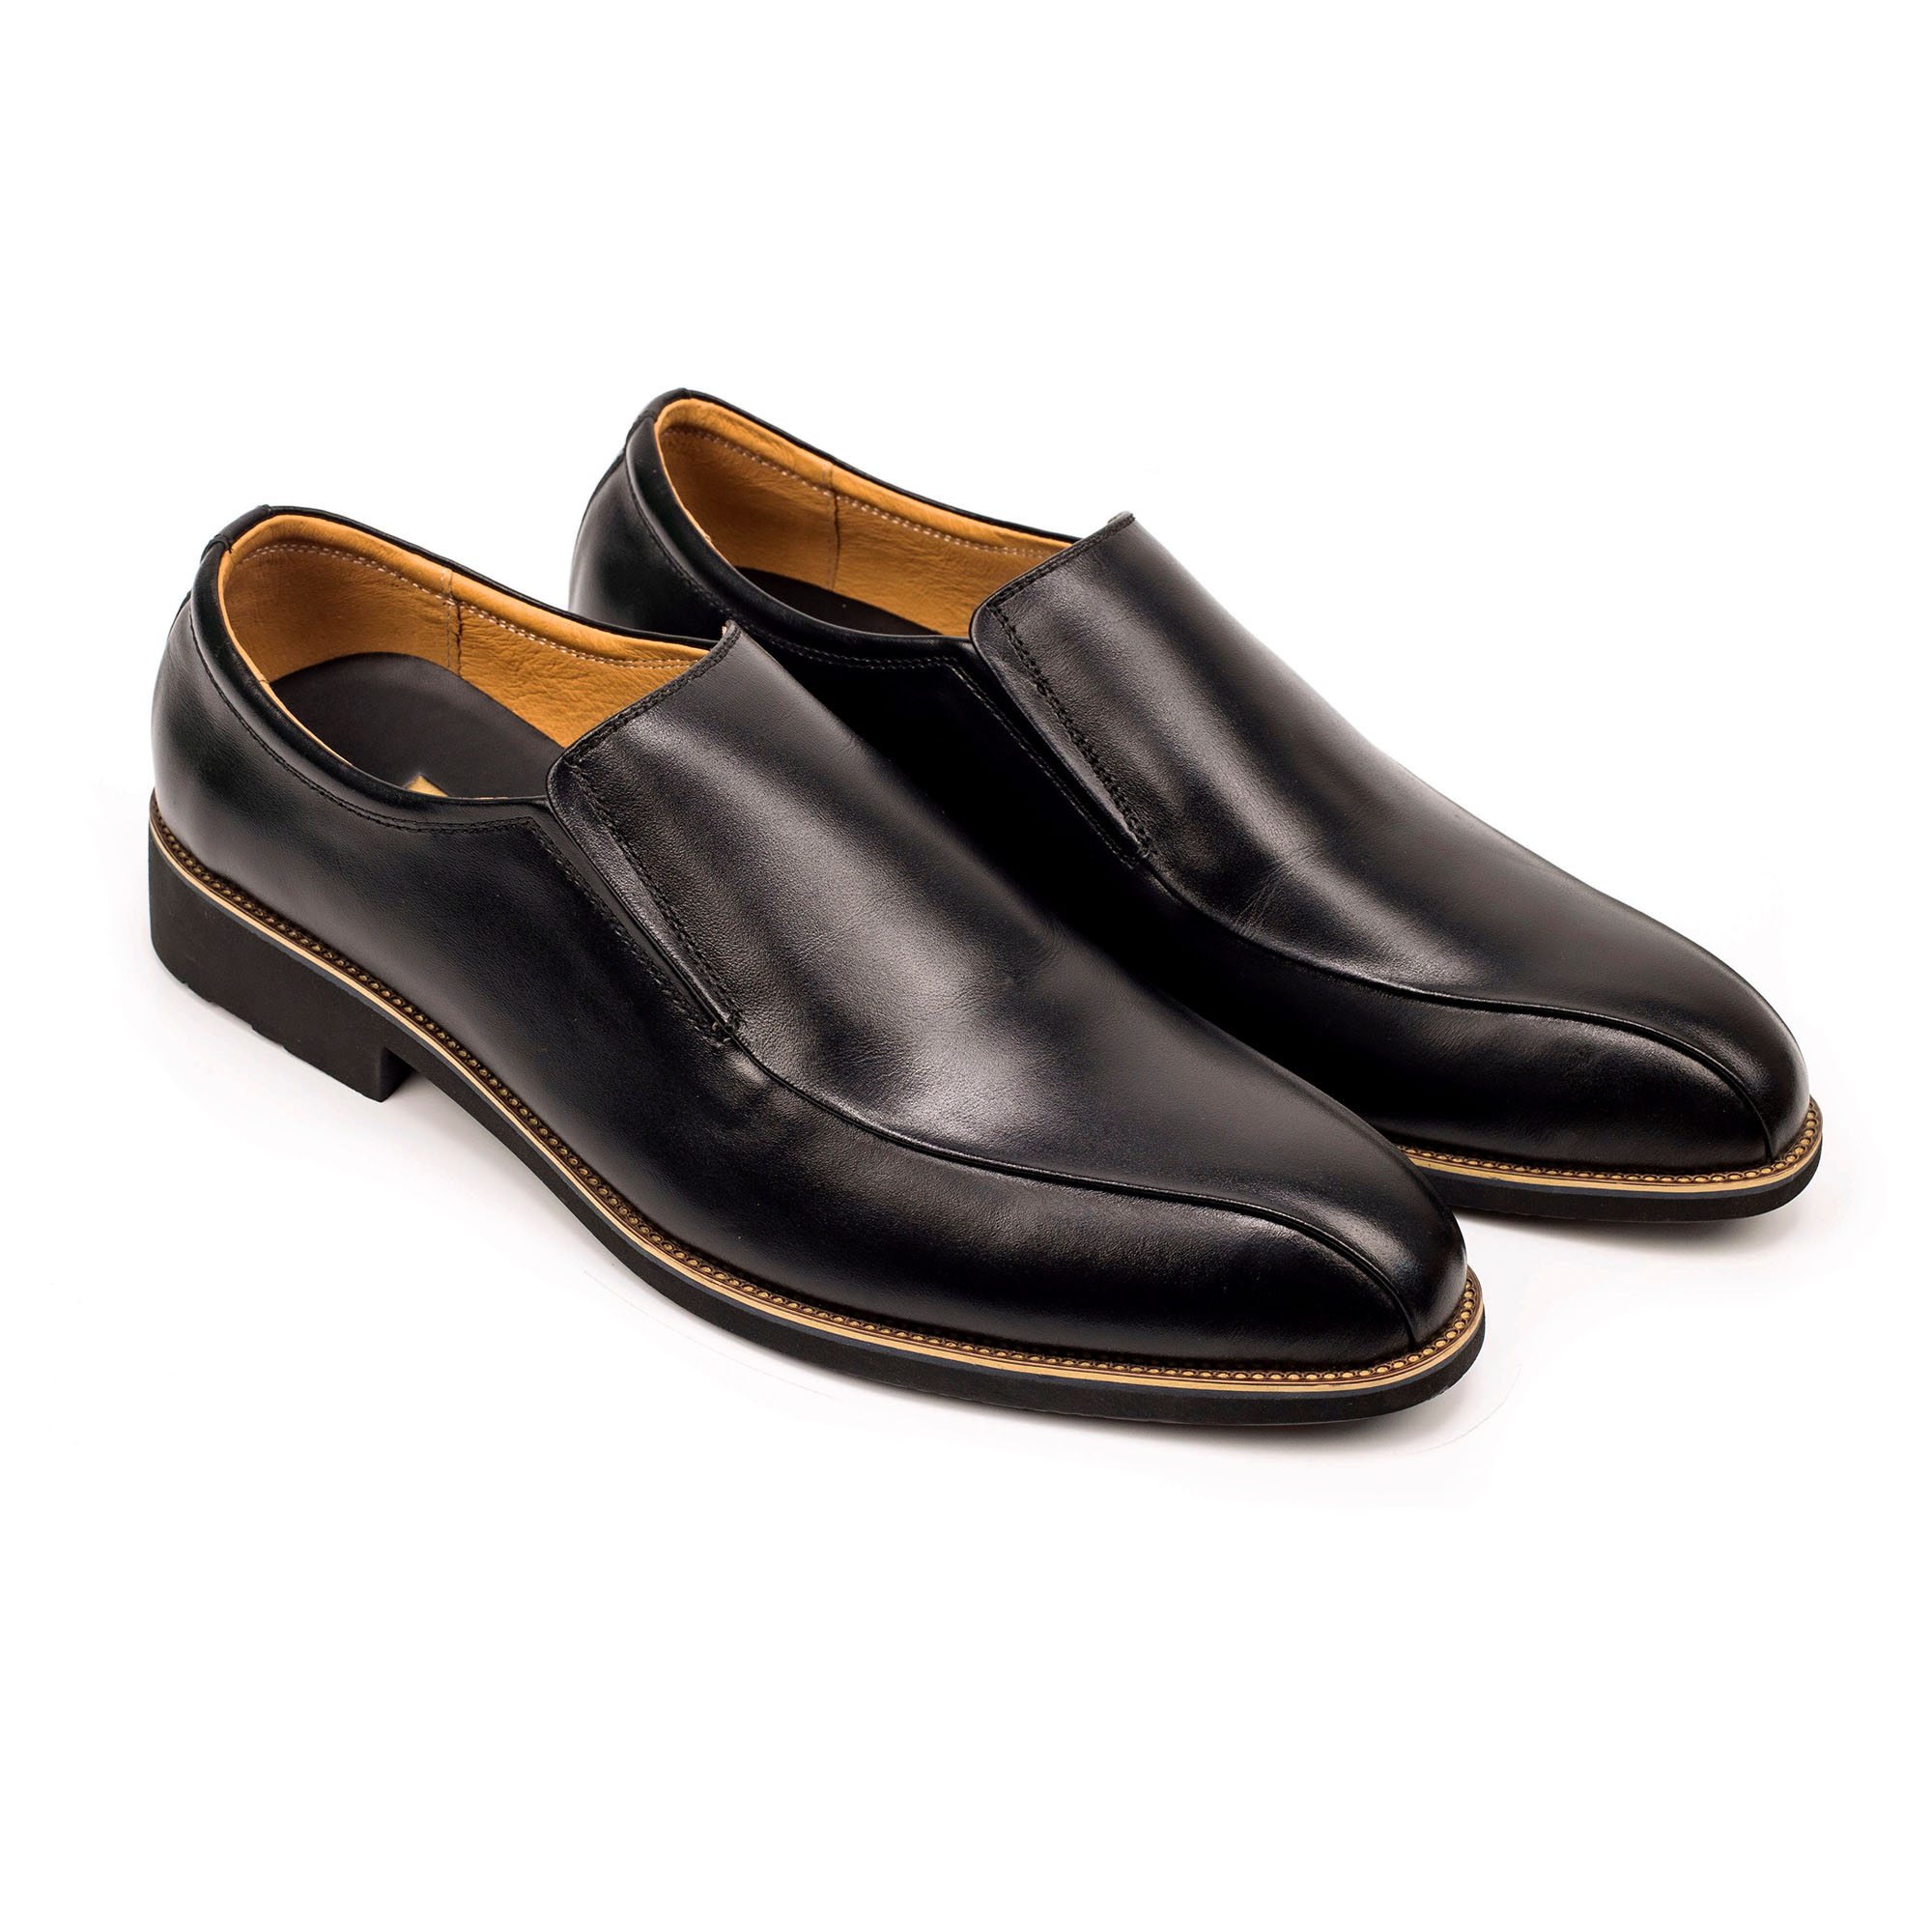 Giày lười da nam công sở Bụi Leather G110 - Da bò Nappa cao cấp - Bảo hành 12 tháng